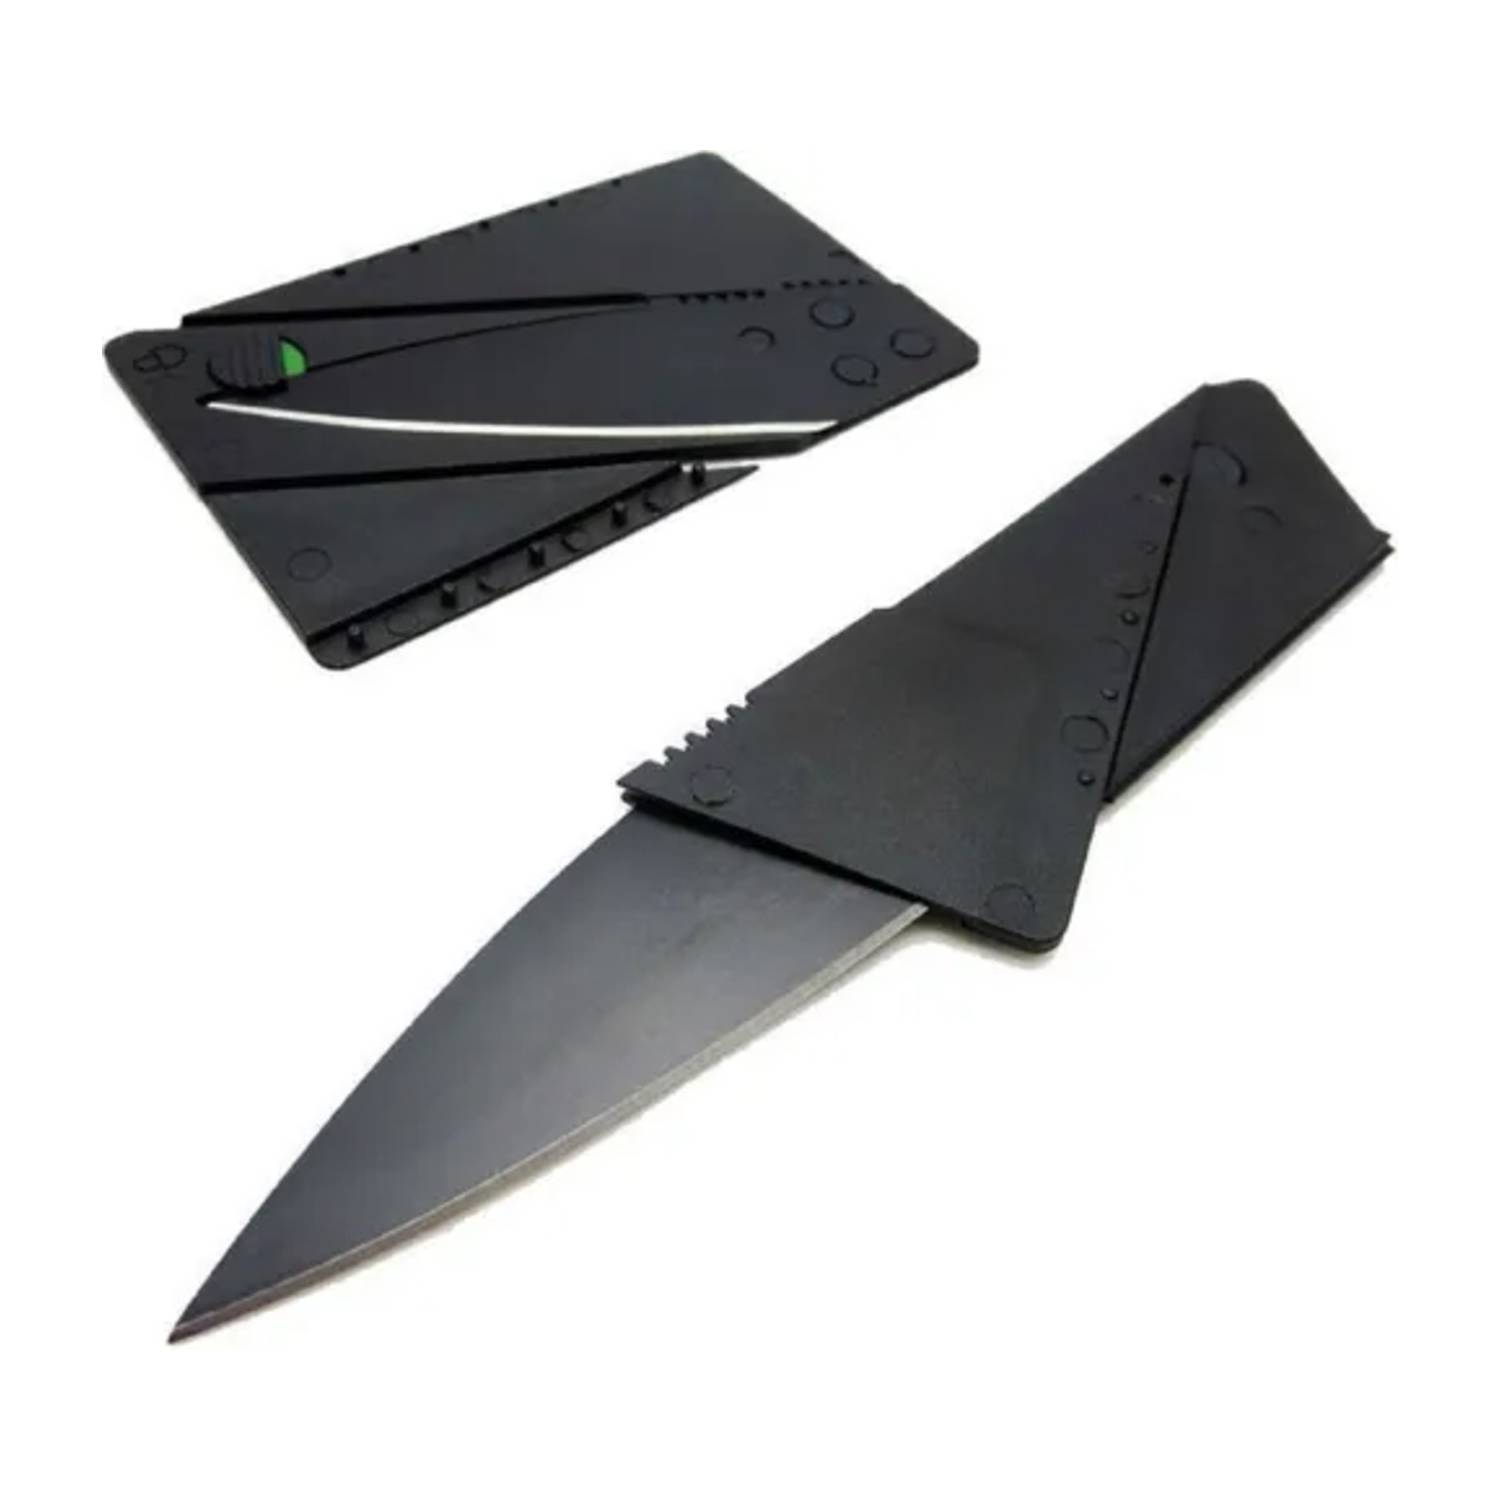 Нож кредитка. Нож кредитка Кардшарп. Нож-кредитка Cardsharp 2. Нож кредитка Cardsharp оригинал. Нож визитка Cardsharp.